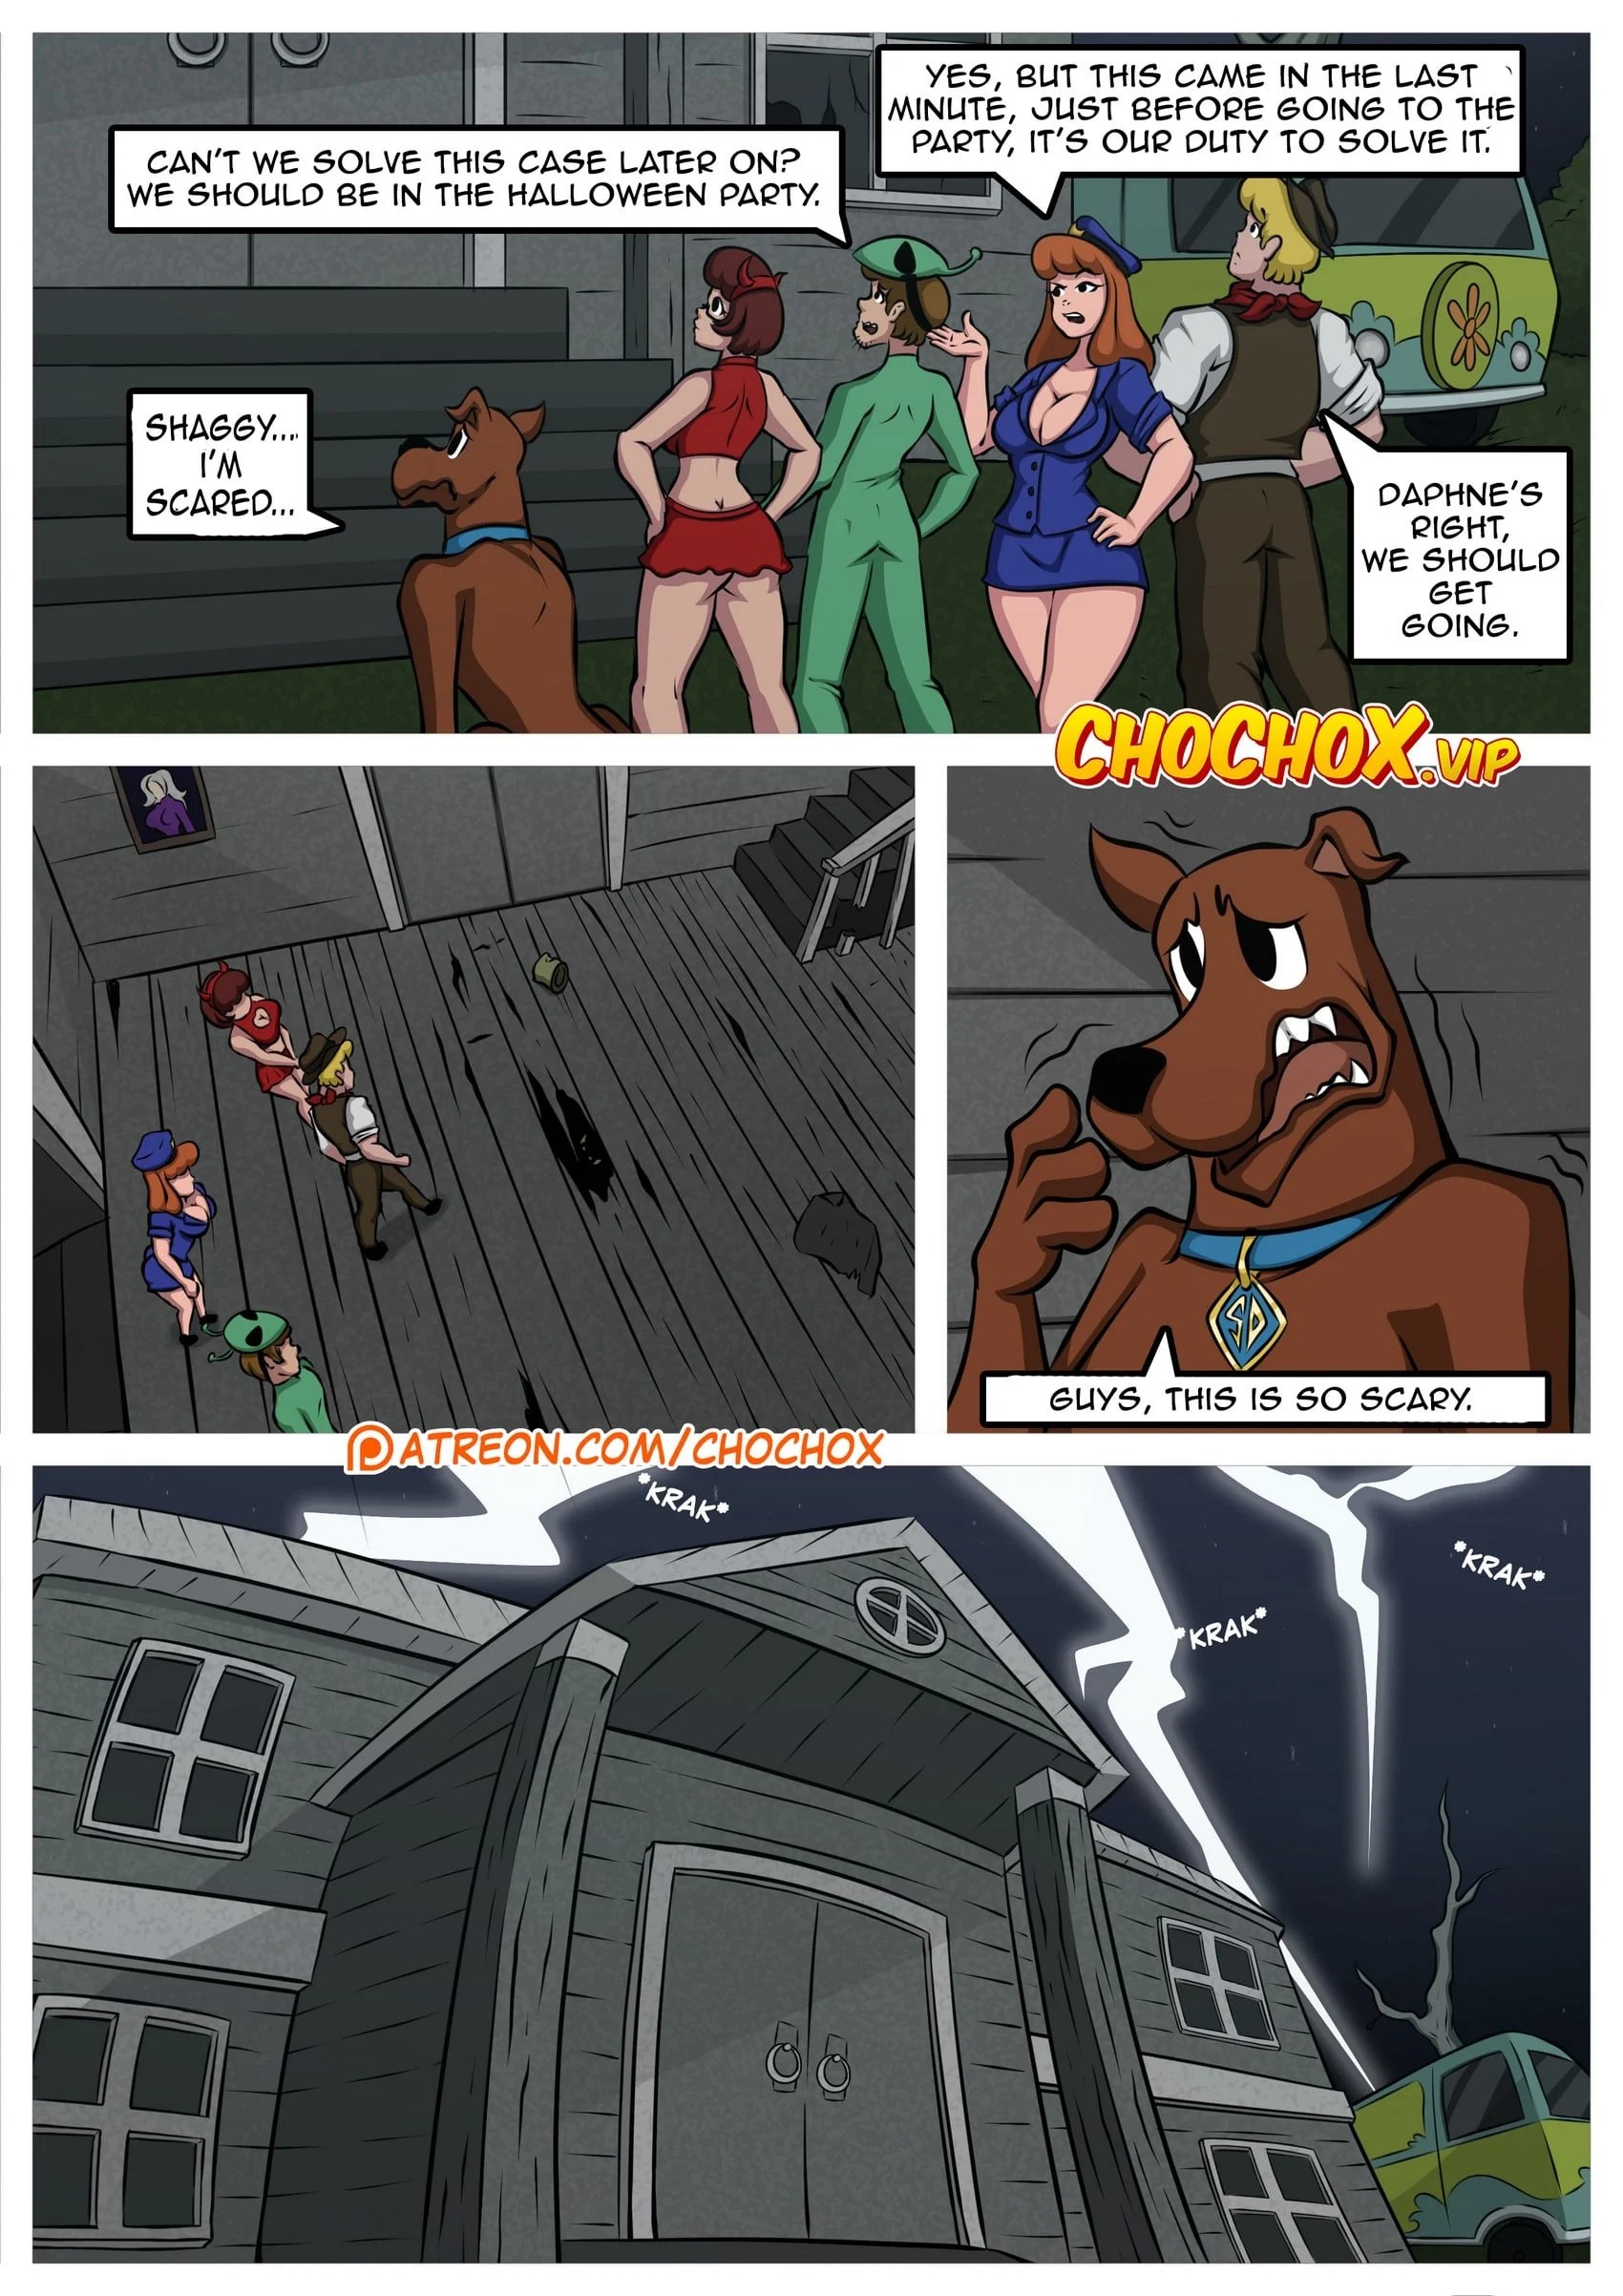 Scooby Doo! – The Halloween Night (English) - 50b5fa8862e436784787a8e44ab28654